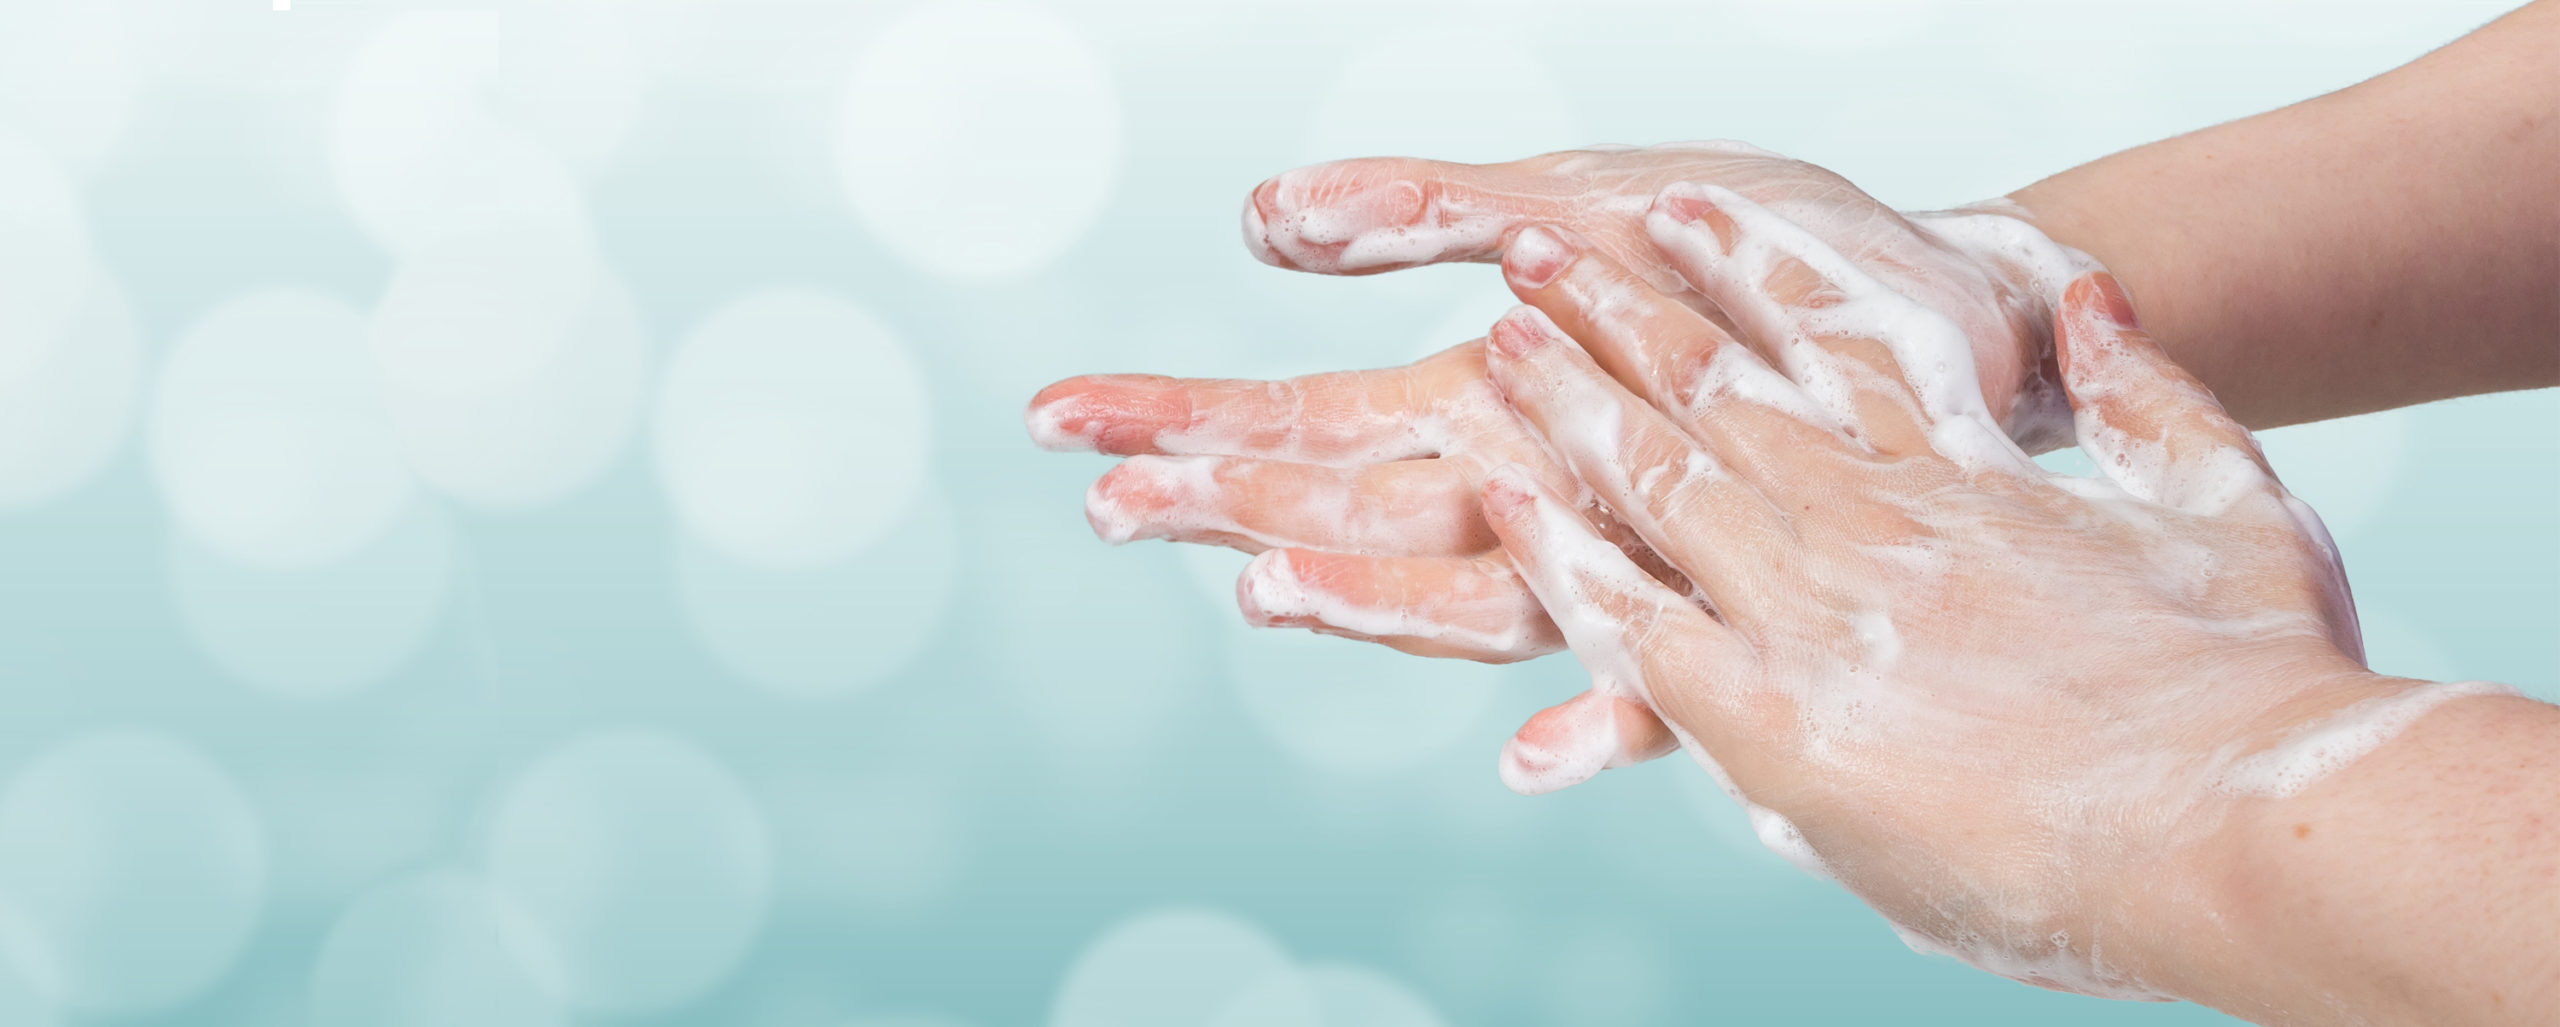 Você sabe a maneira correta de lavar as mãos?